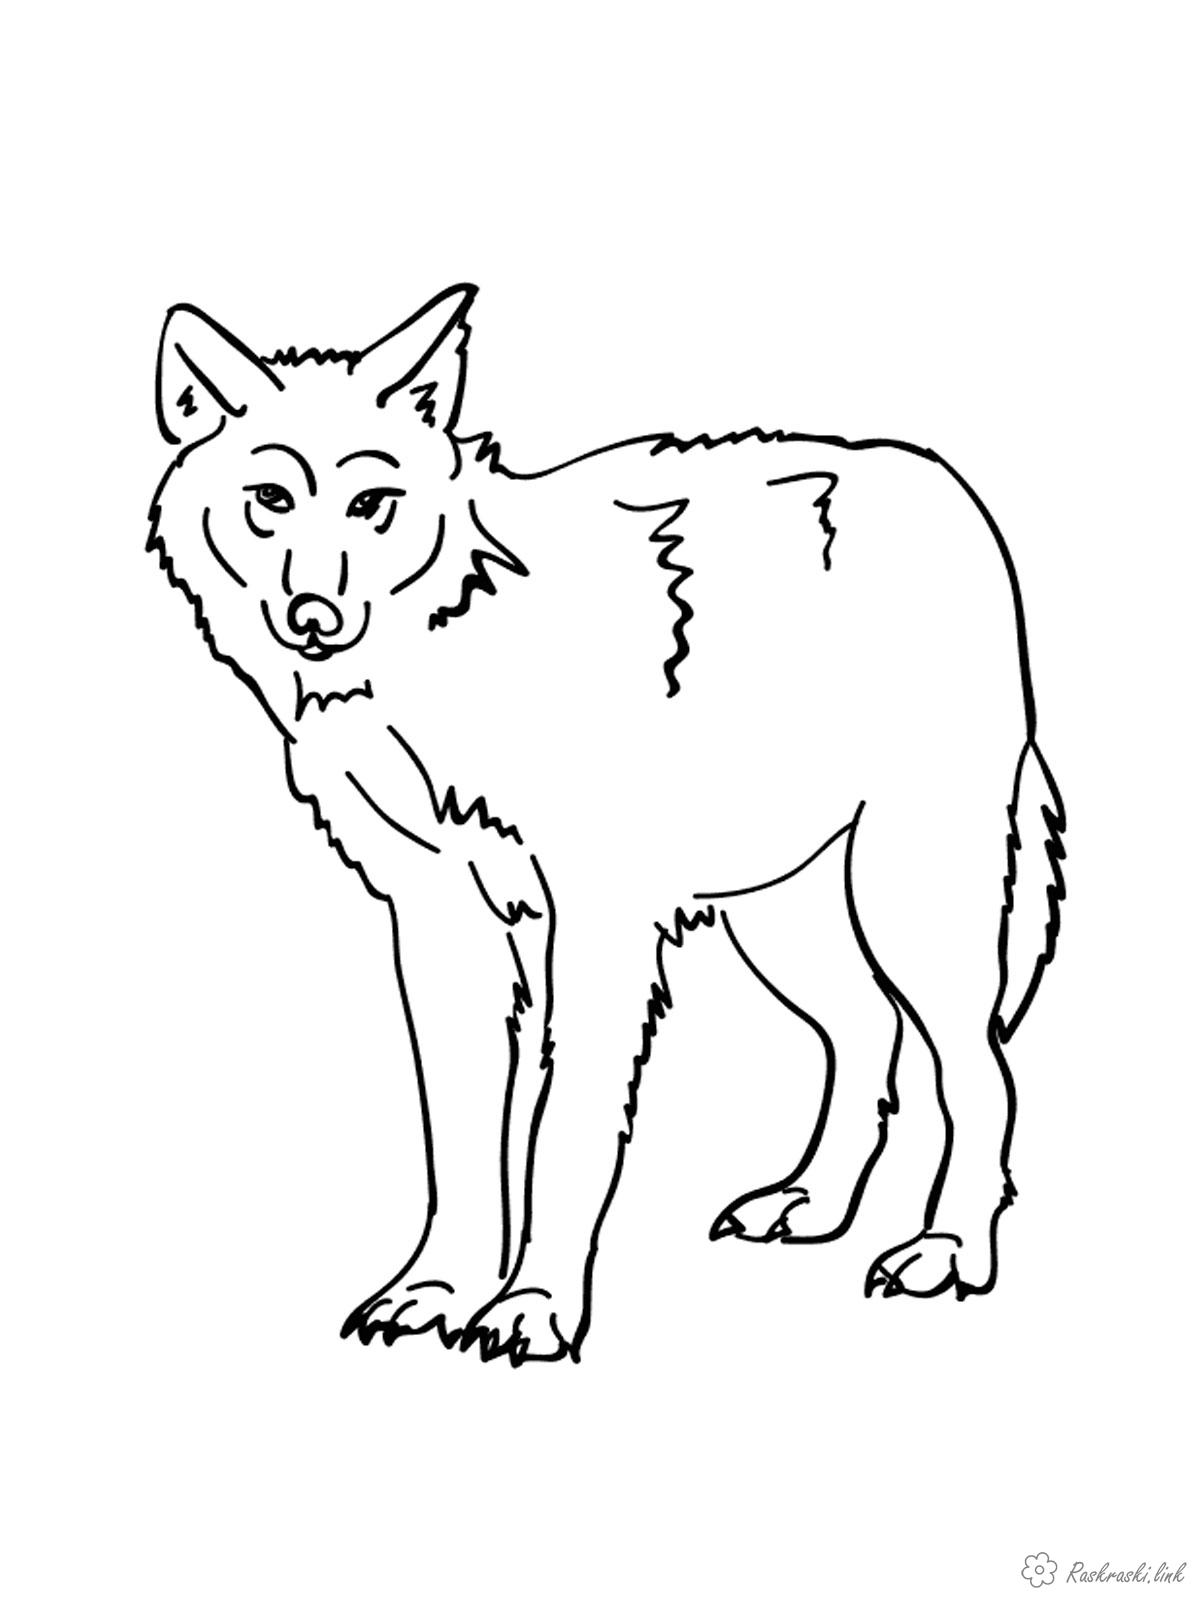 Розмальовки вовк розфарбування для дітей, звірі, вовки, безкоштовно